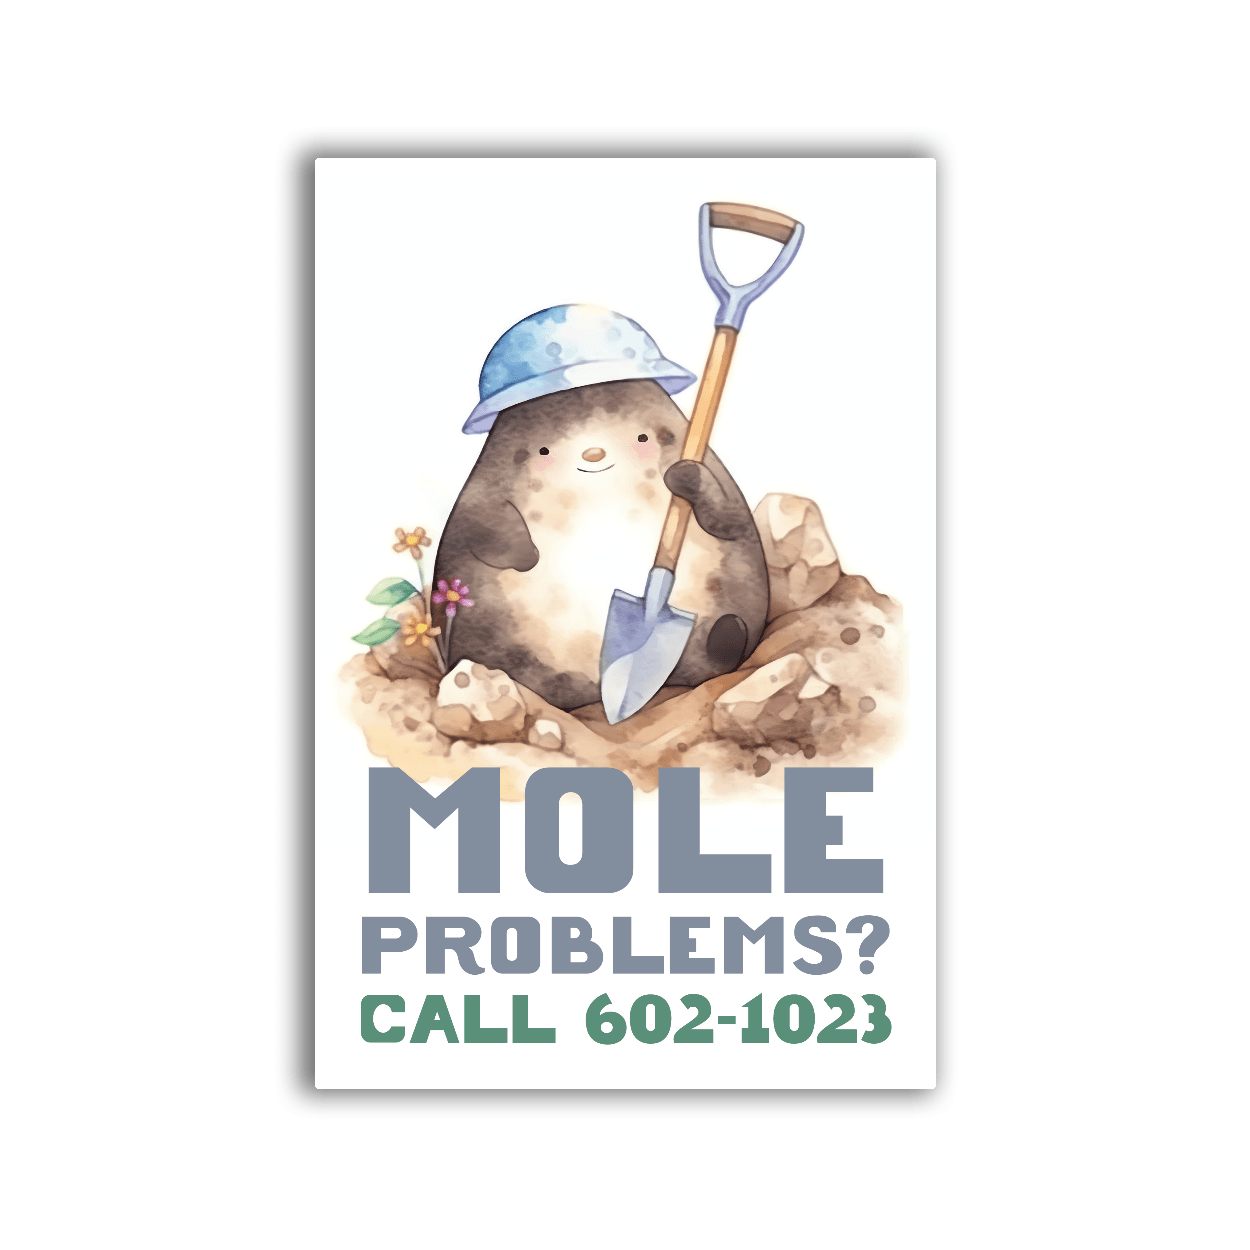 Mole Problems - 2x3 Magnet